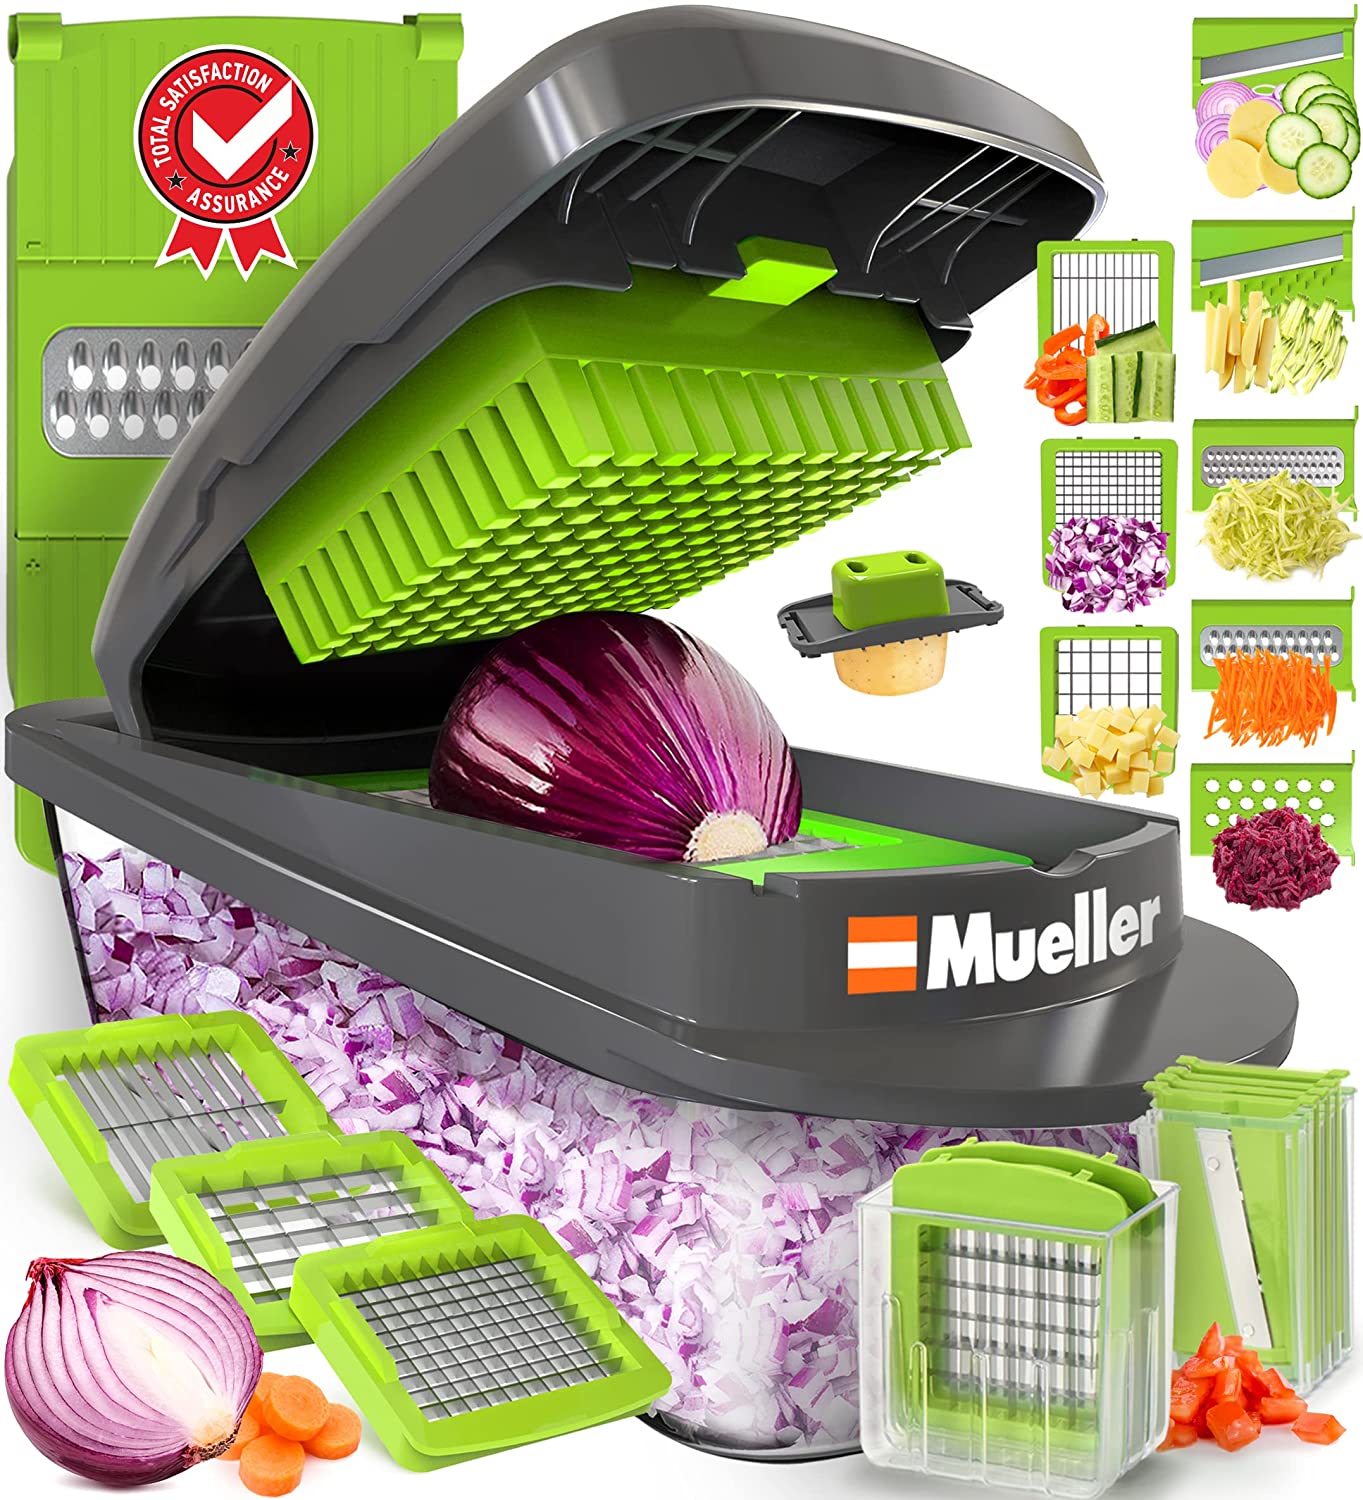 【美國代購】Mueller Pro 系列 10 合 1、8 刀片蔬菜切片機、洋蔥切碎機、切菜機、切碎機、切丁機、帶容器的雞蛋切片機